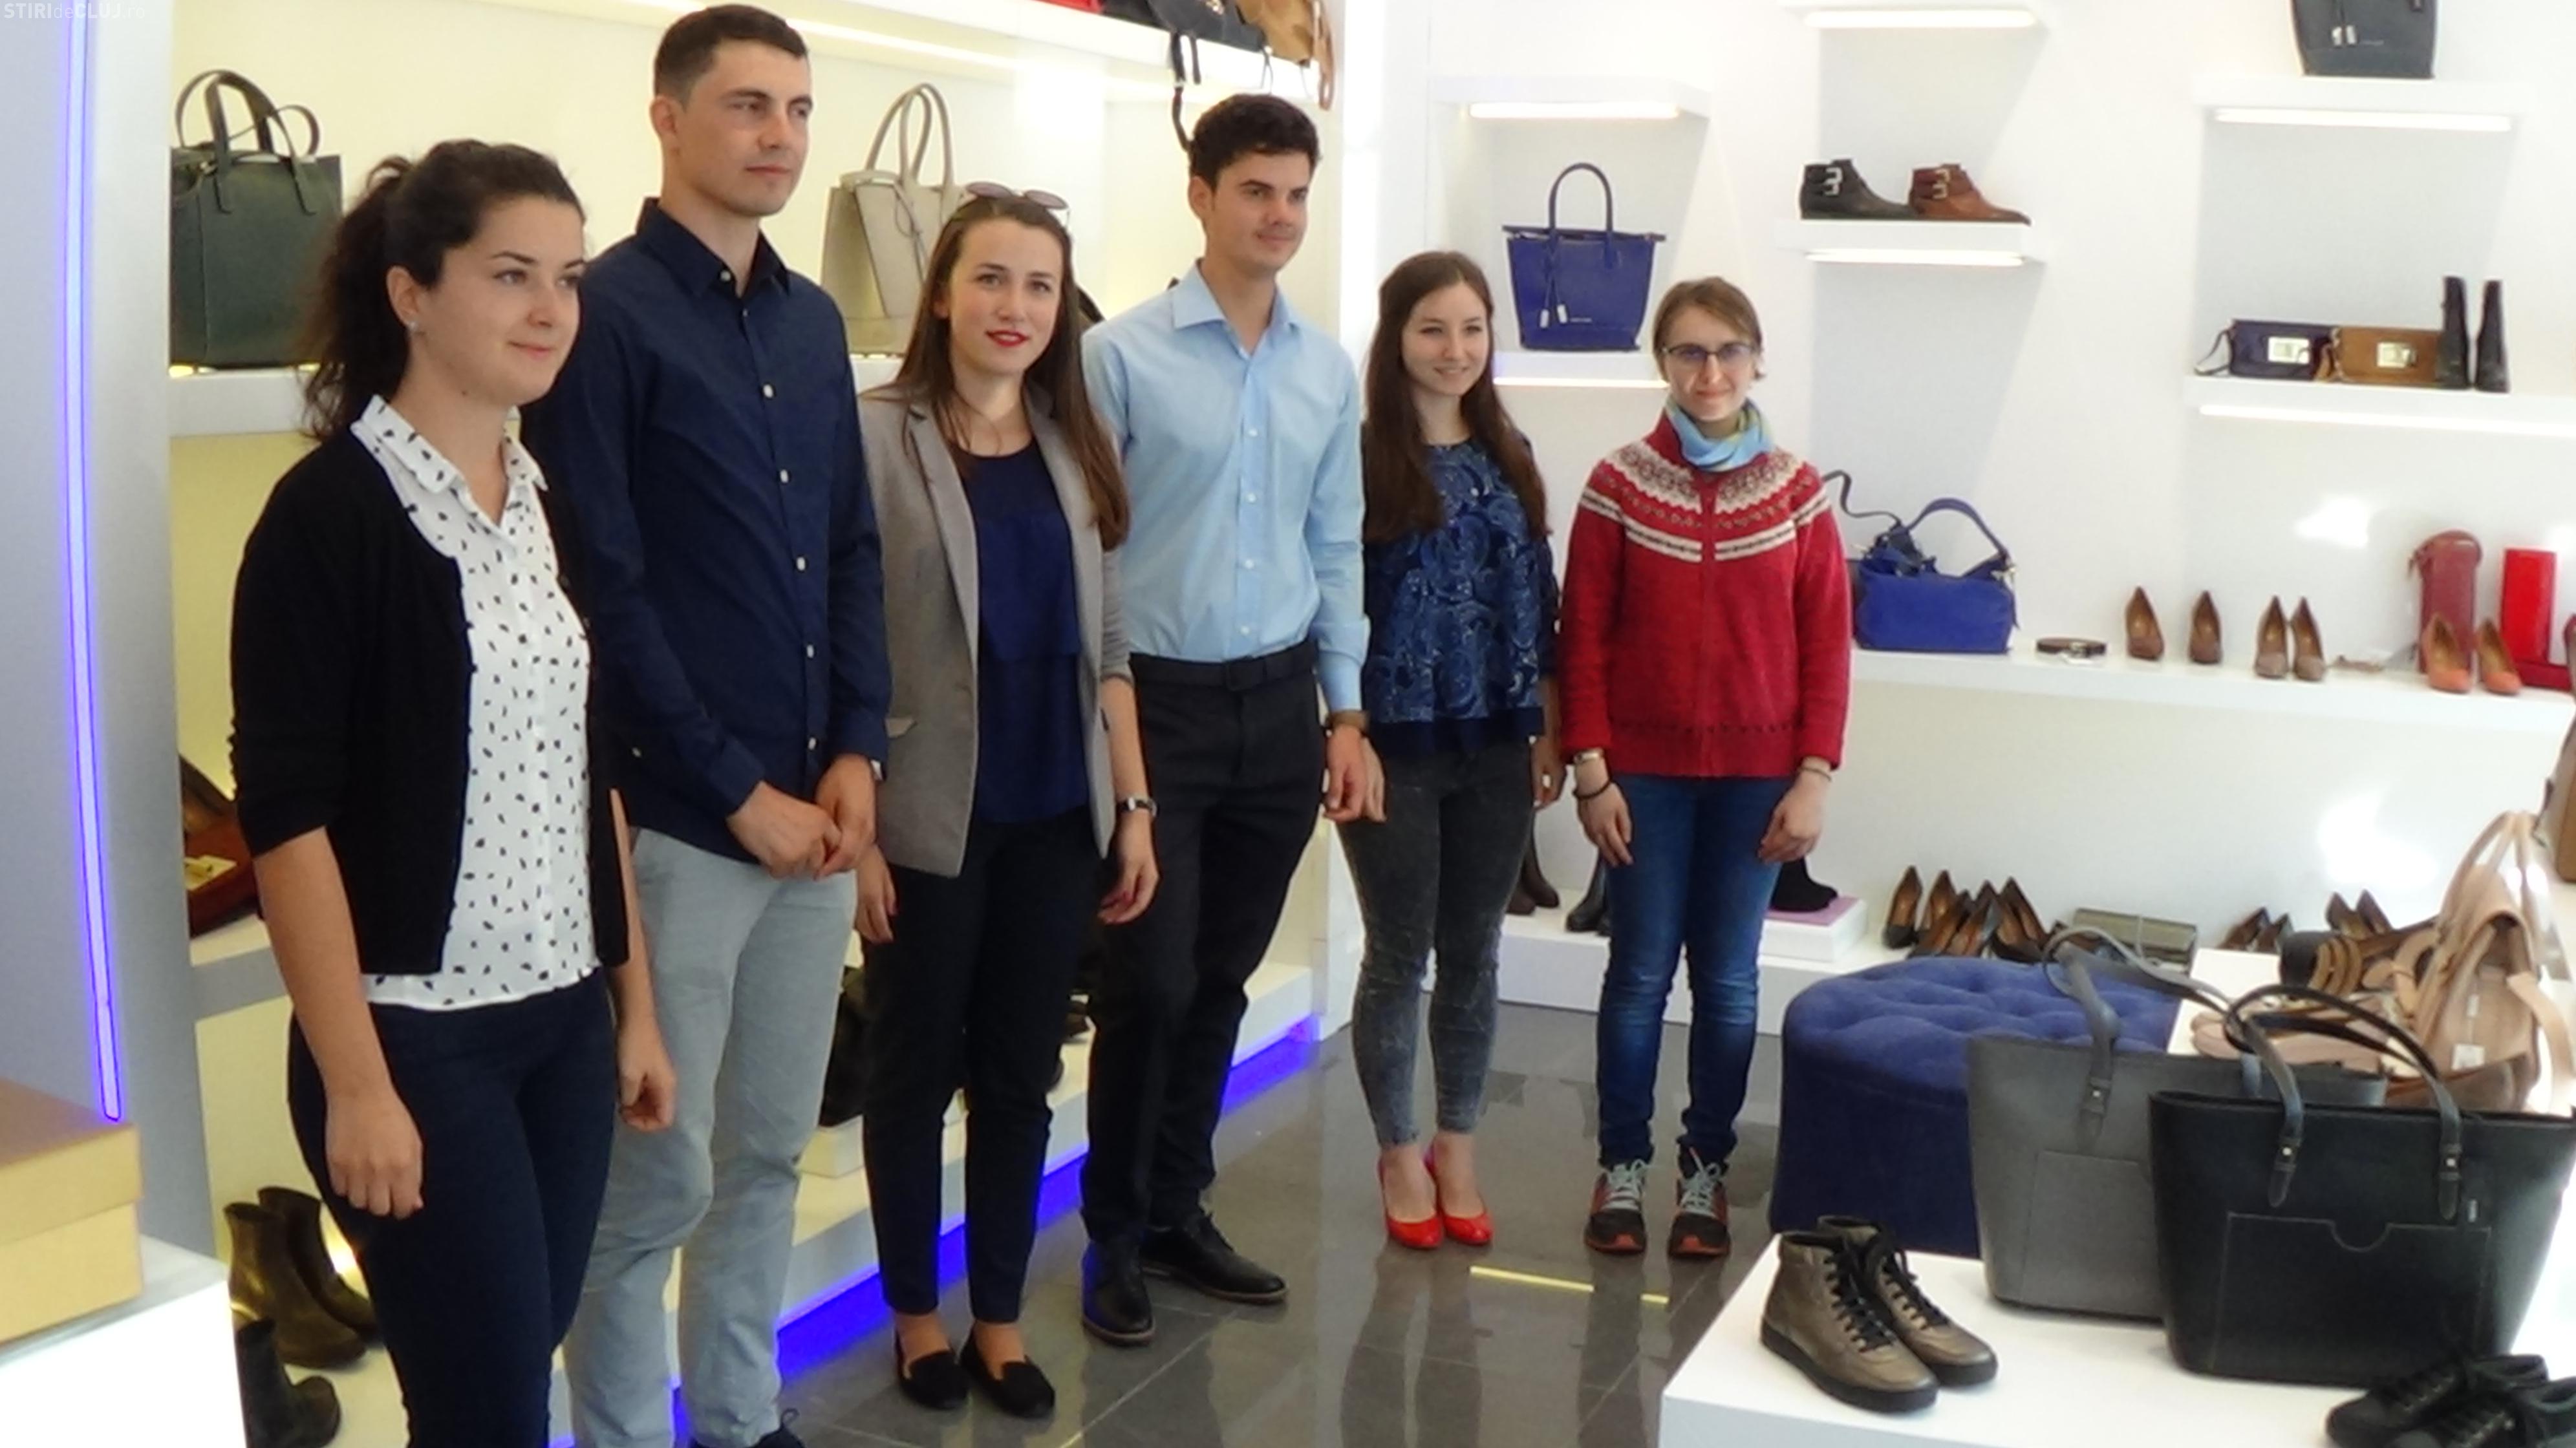 his metal Hover Fabrica de încălţăminte DENIS i-a premiat pe cei mai buni studenți clujeni,  la deschiderea noului magazin de pe Eroilor FOTO/VIDEO (P) - Ştiri de Cluj